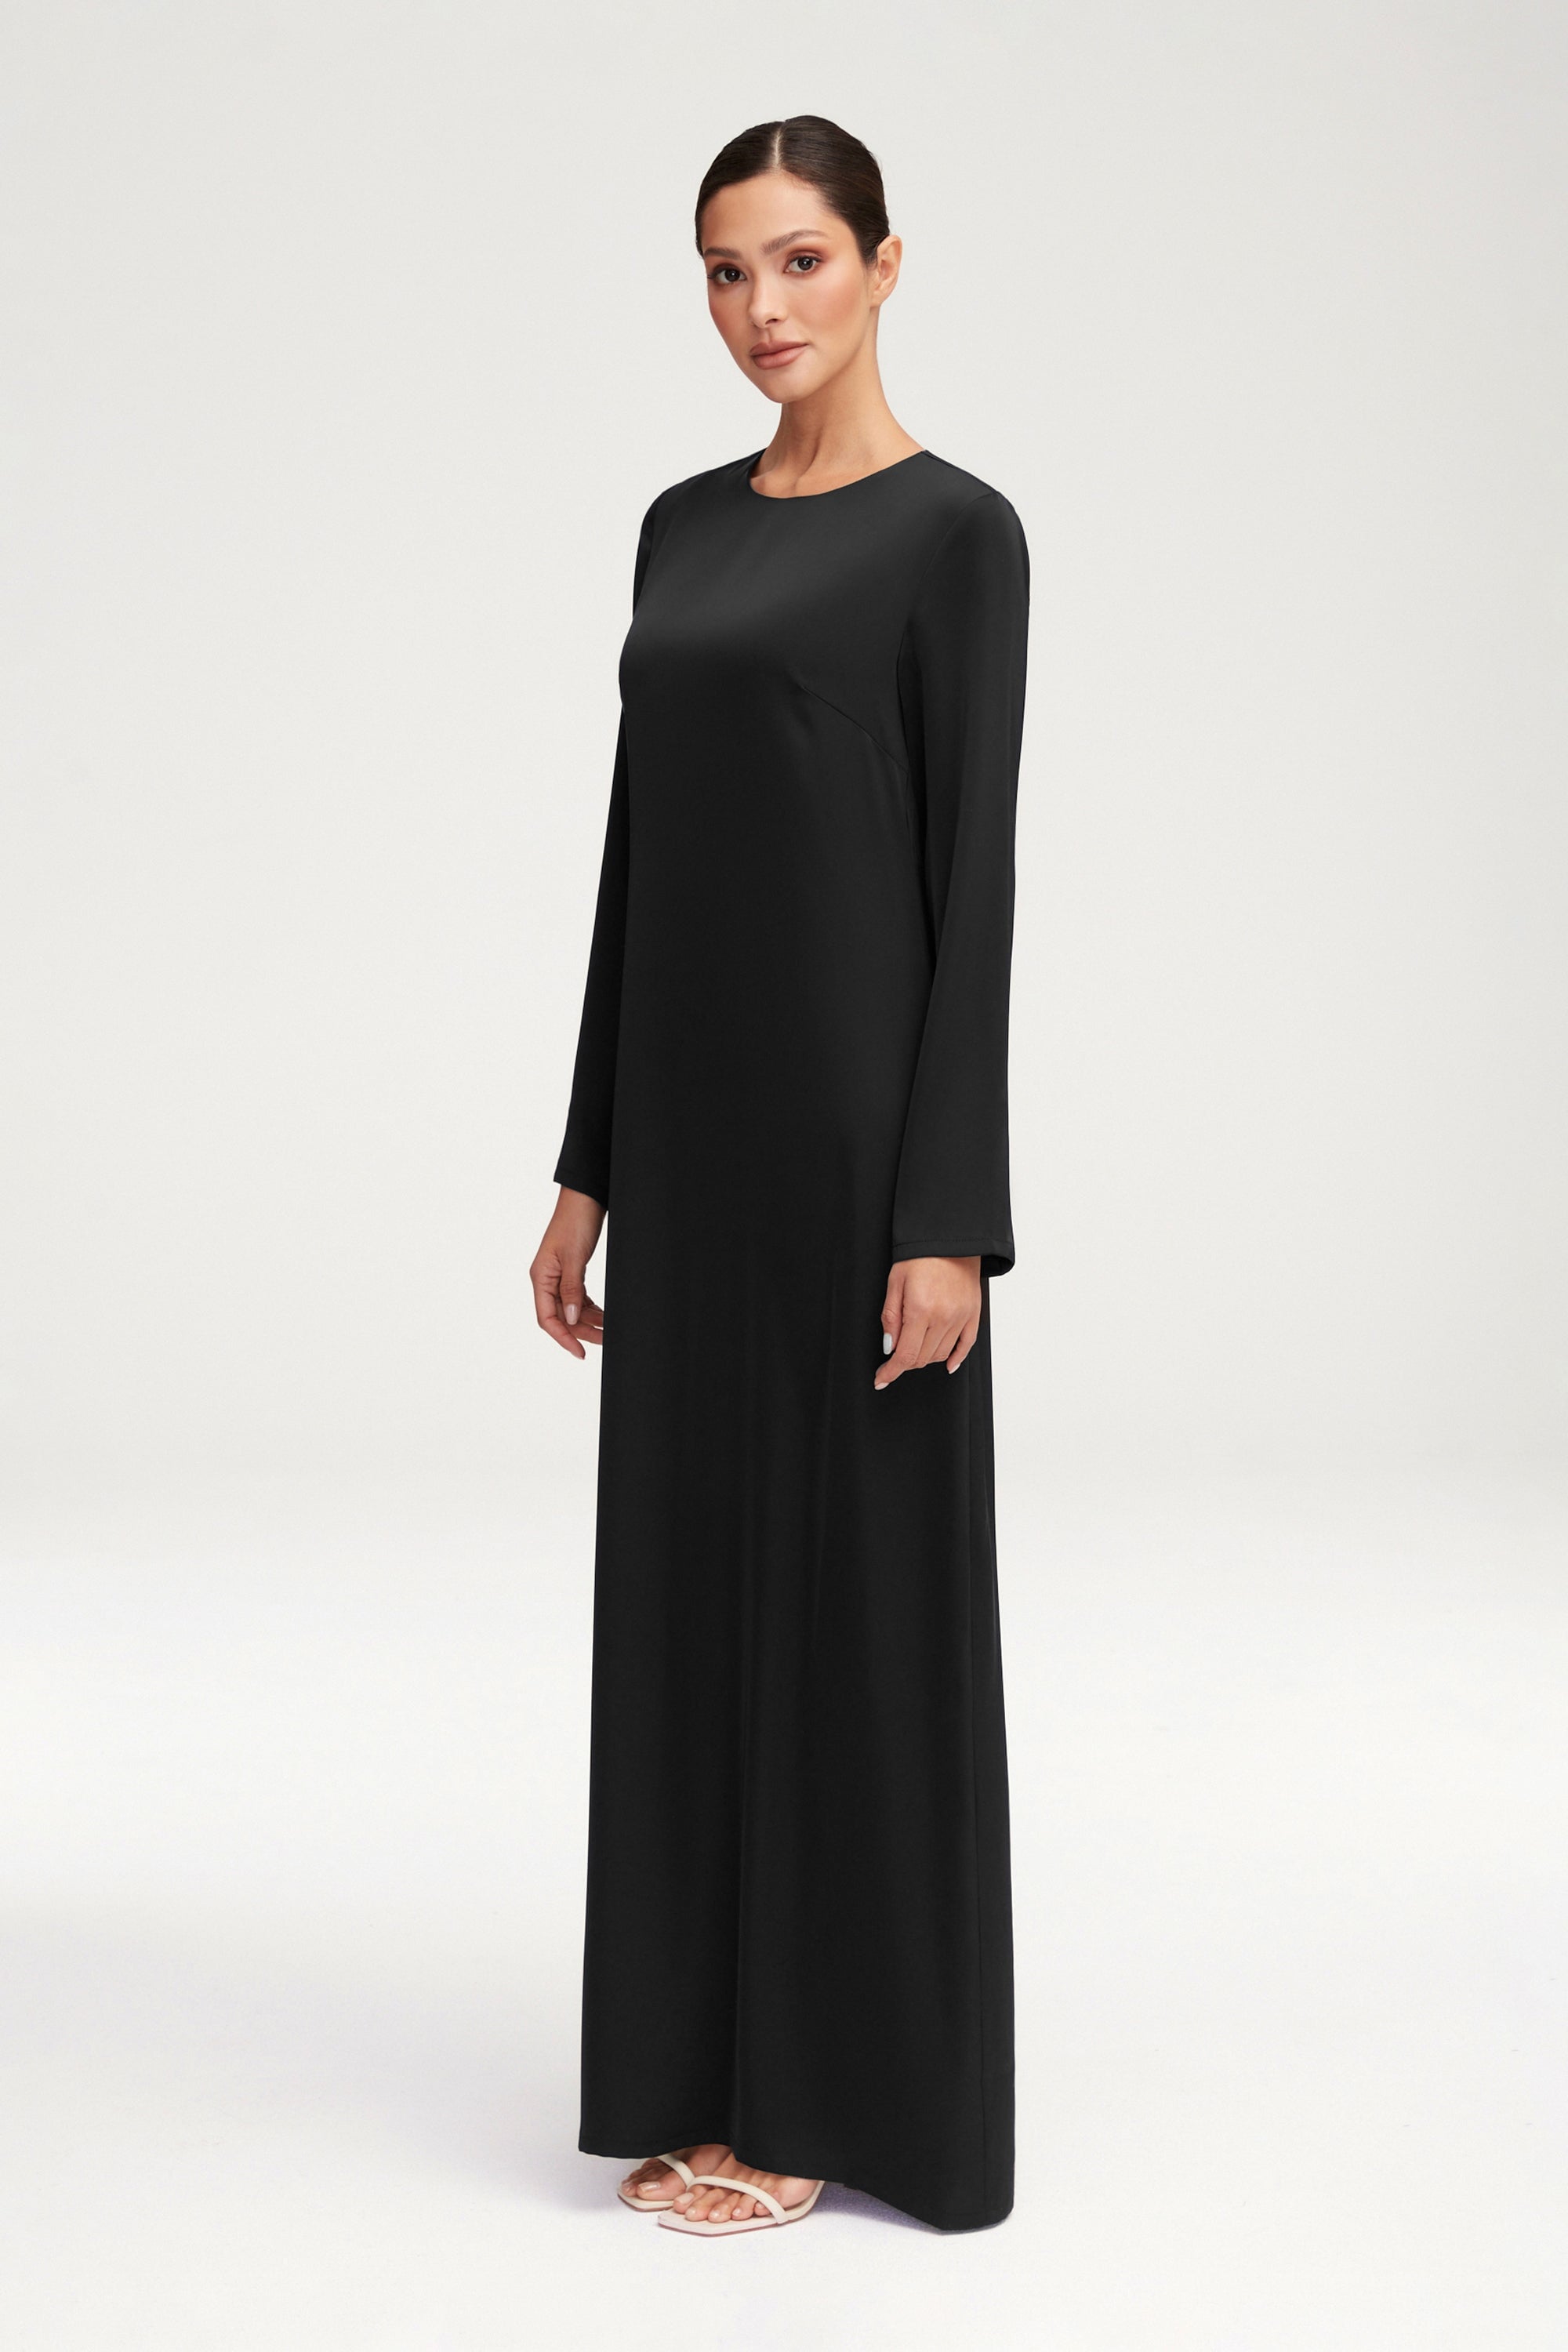 Essential Inner Slip Satin Maxi Dress - Black Clothing Veiled 